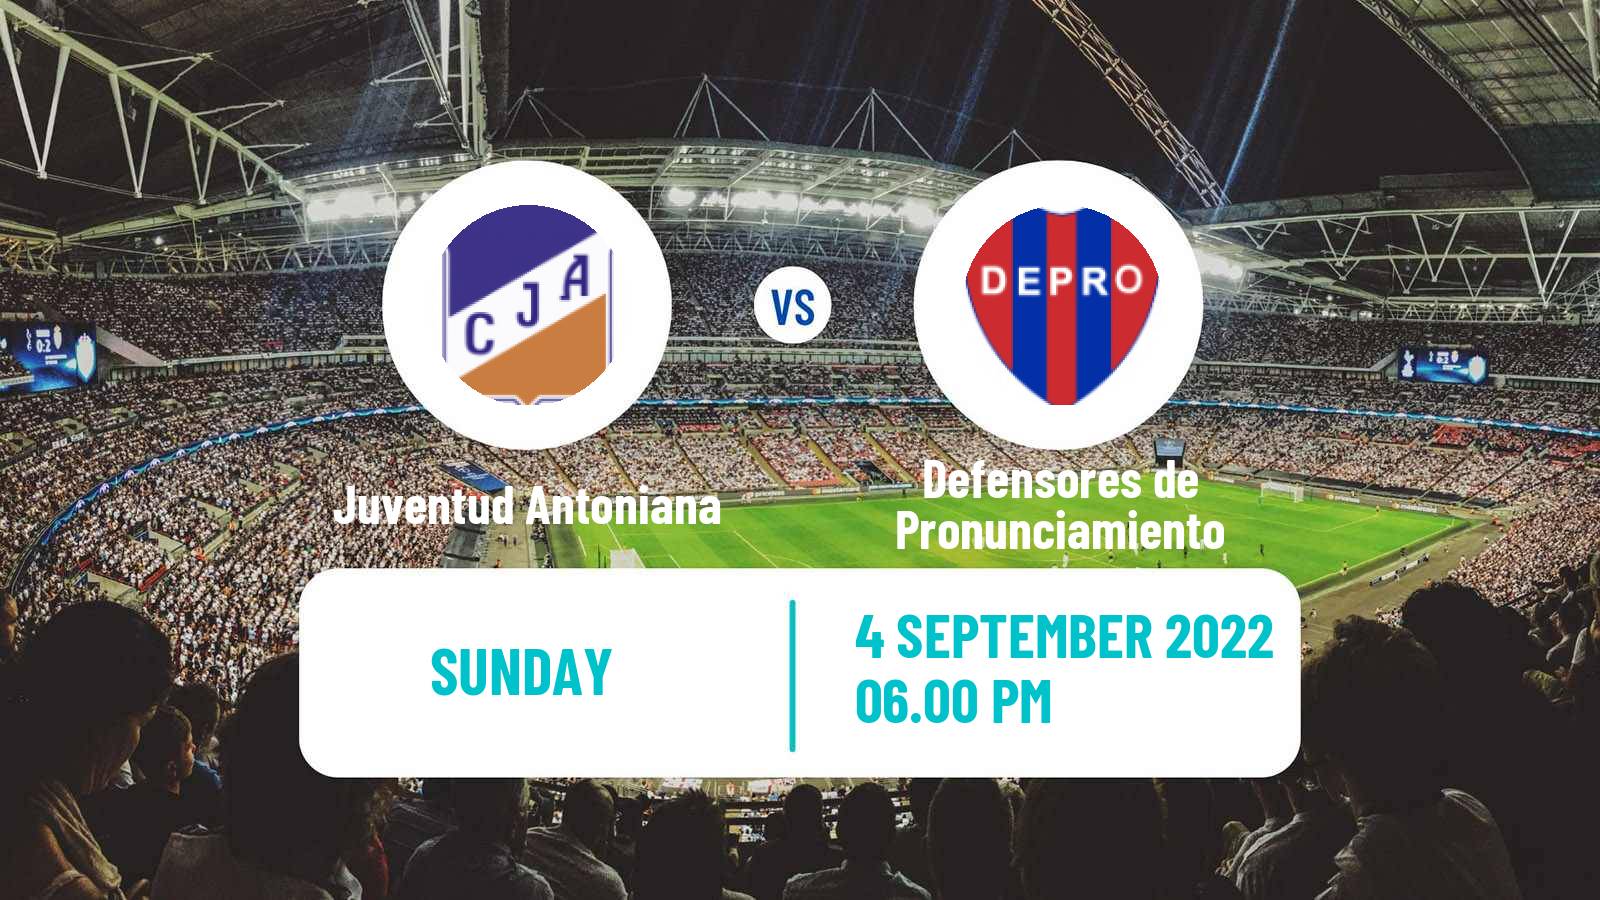 Soccer Argentinian Torneo Federal Juventud Antoniana - Defensores de Pronunciamiento